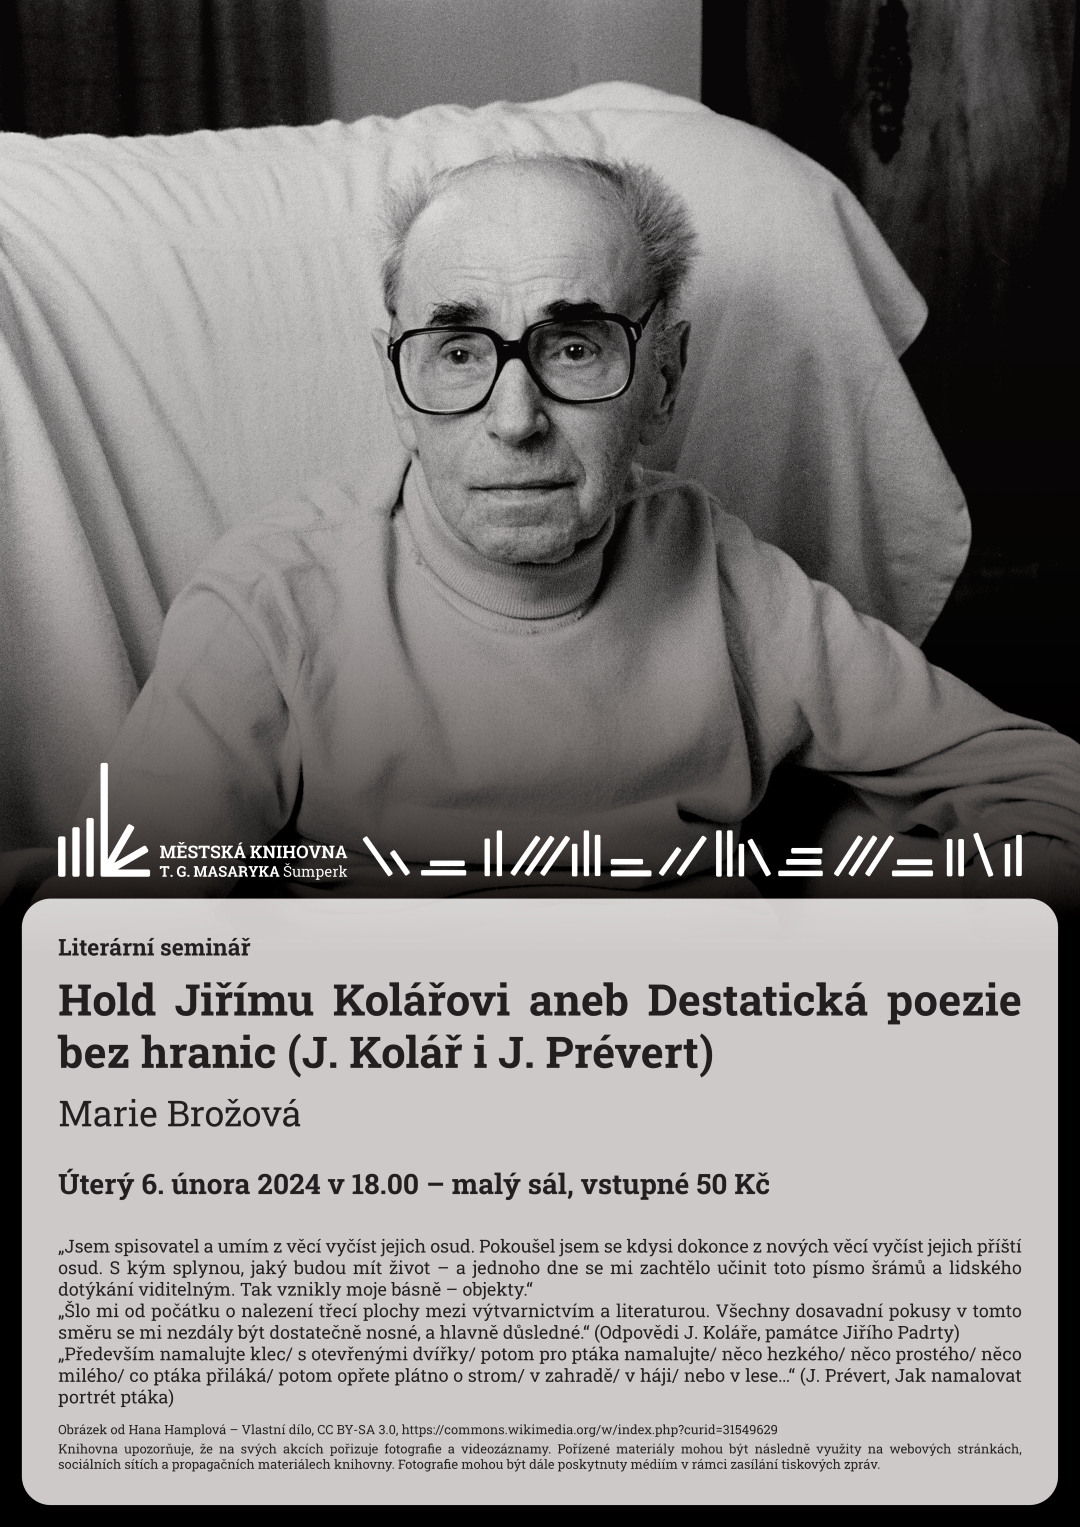 Plakát pro literární seminář Marie Brožové o Jiřím Kolářovi